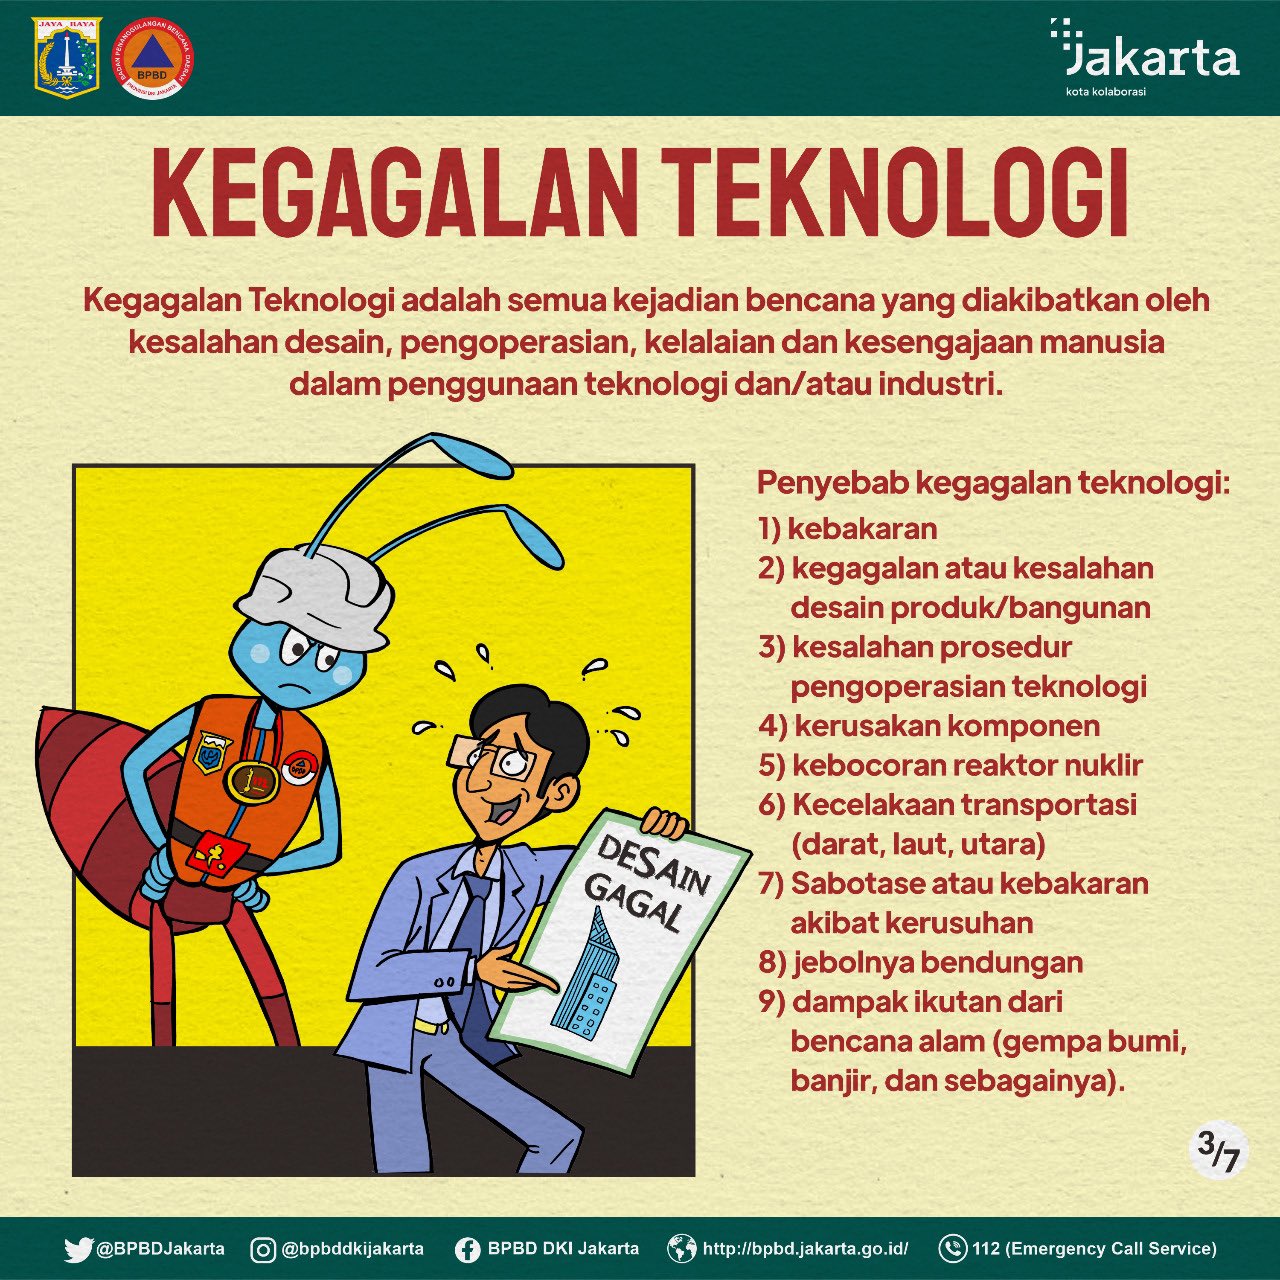 BPBD DKI Jakarta Angkat Kegagalan Teknologi sebagai Tema Edukasi